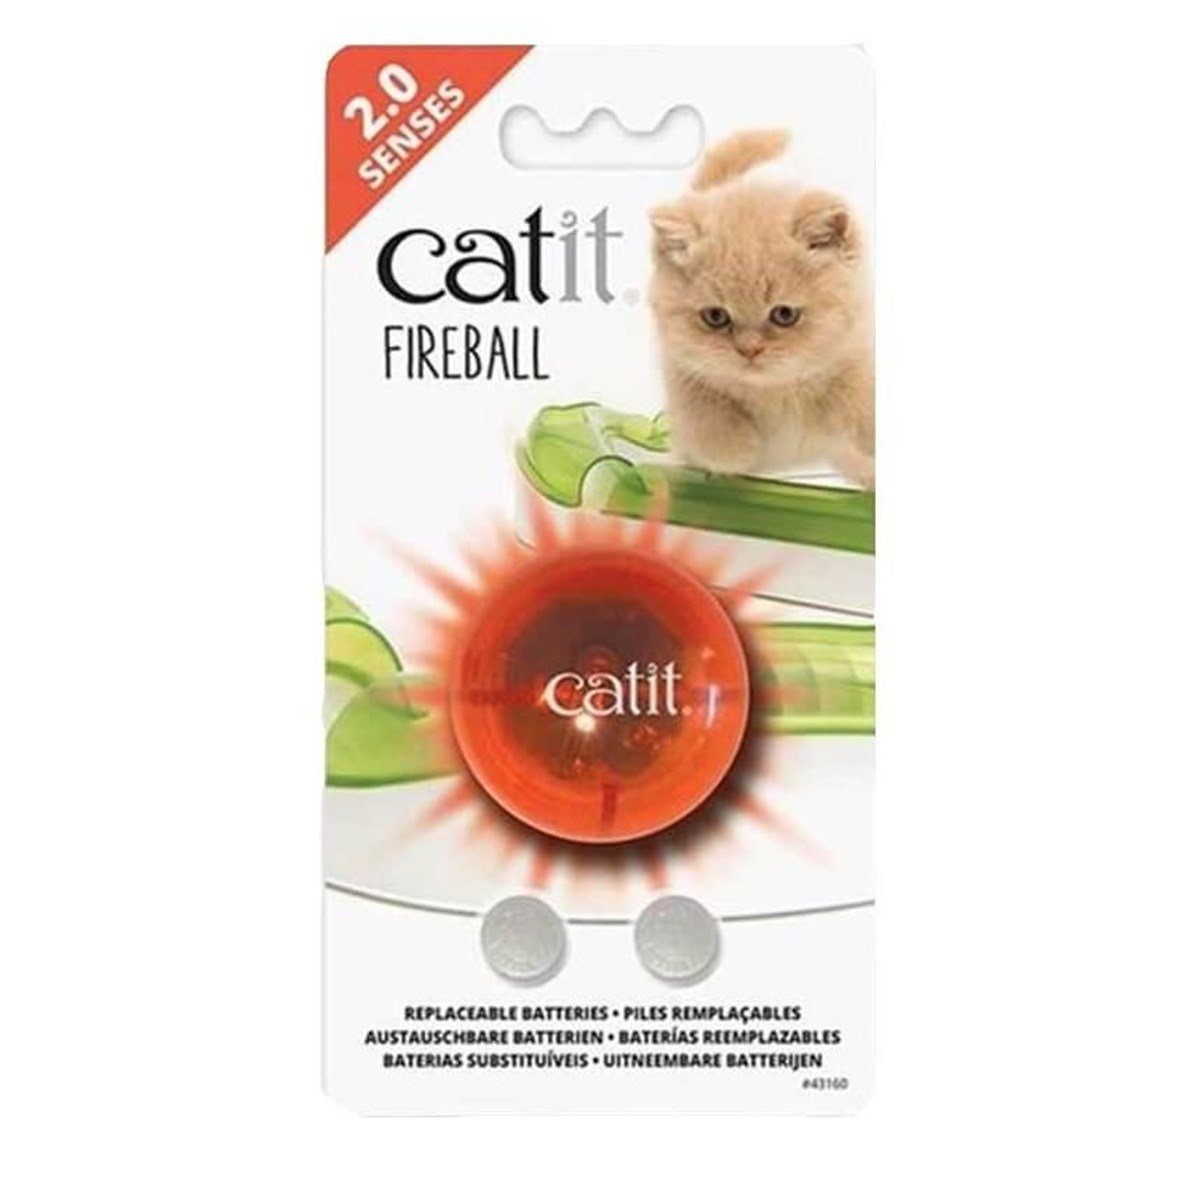 Catit Senses 2.0 Fireball Kedi Oyuncağı